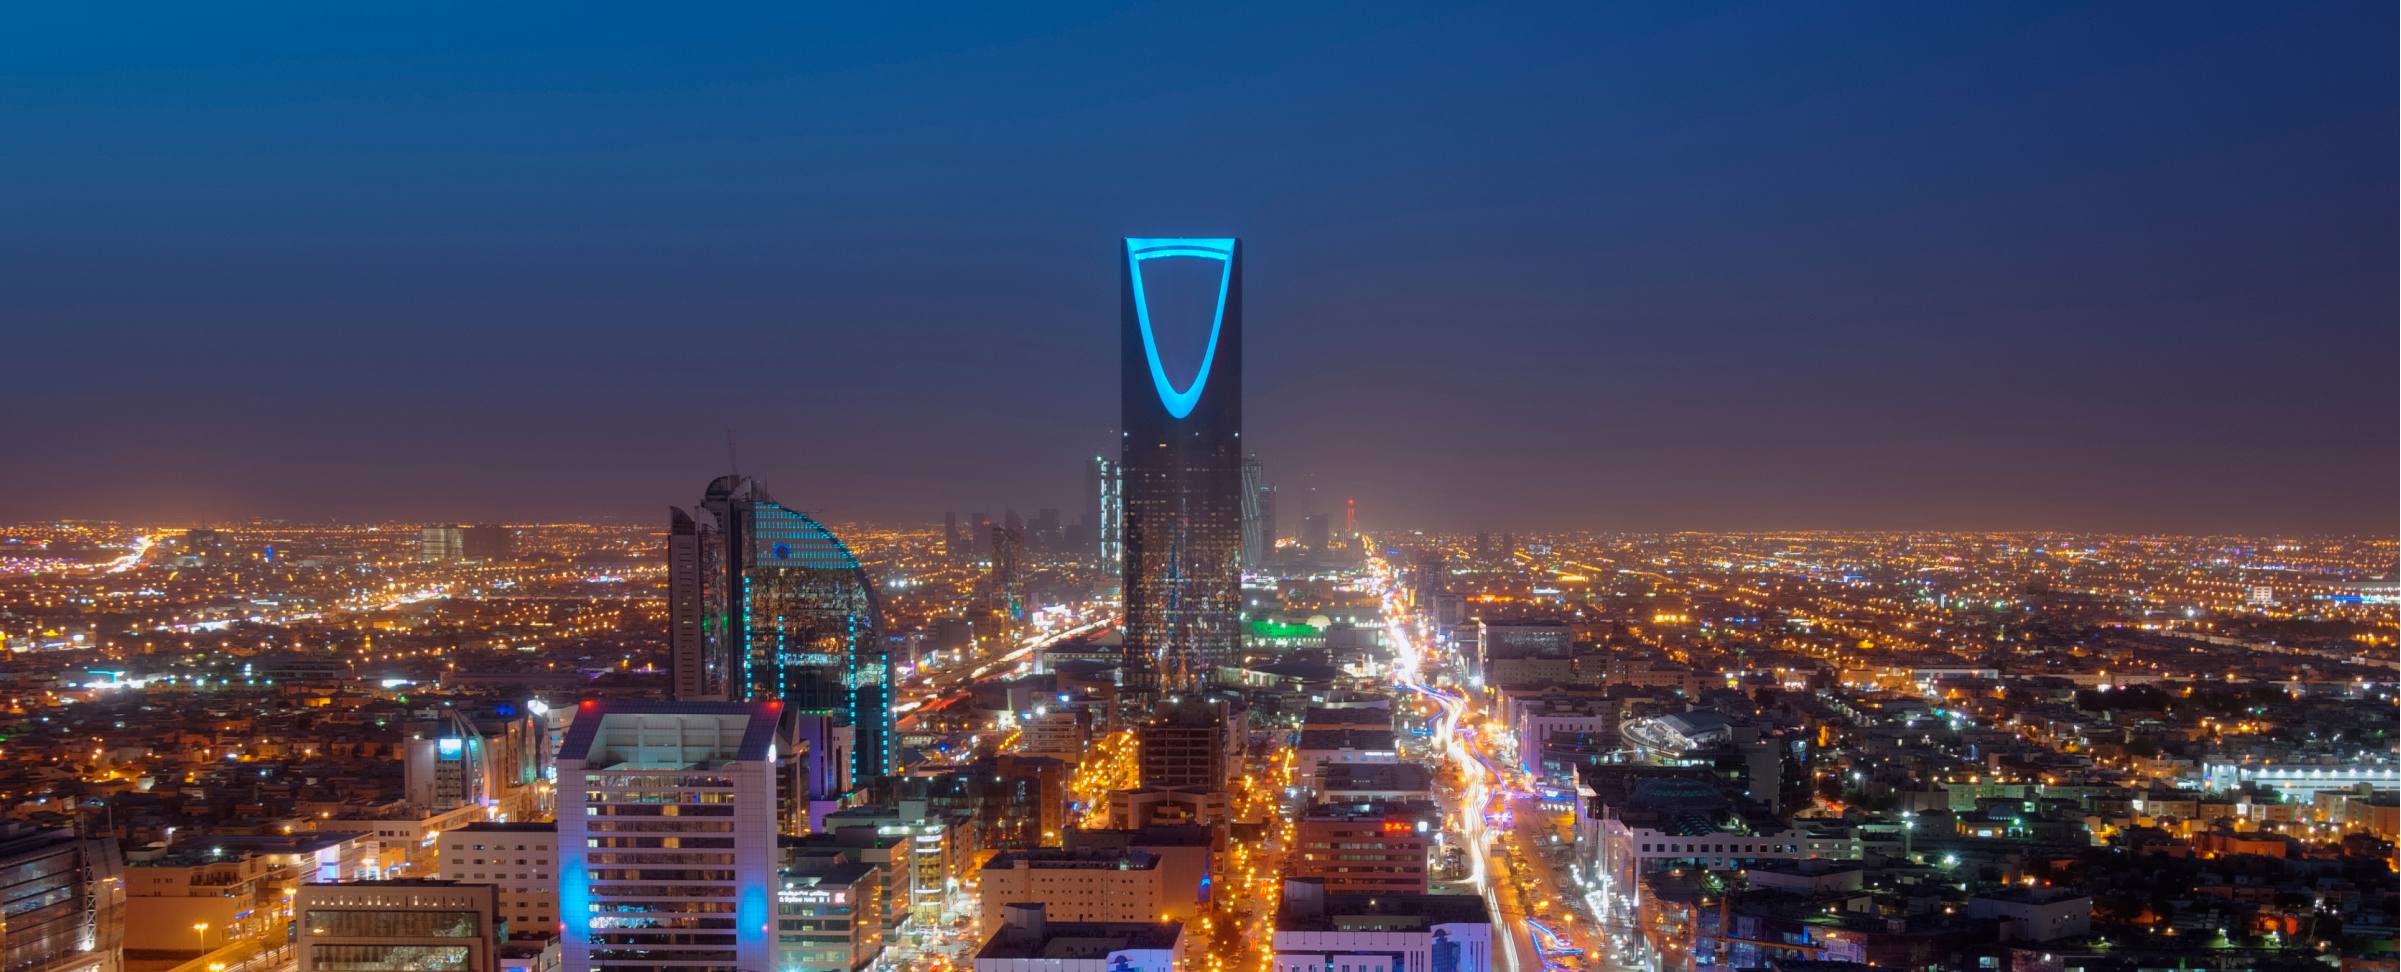 What Has Saudi Arabia's Vision 2030 Achieved So Far?